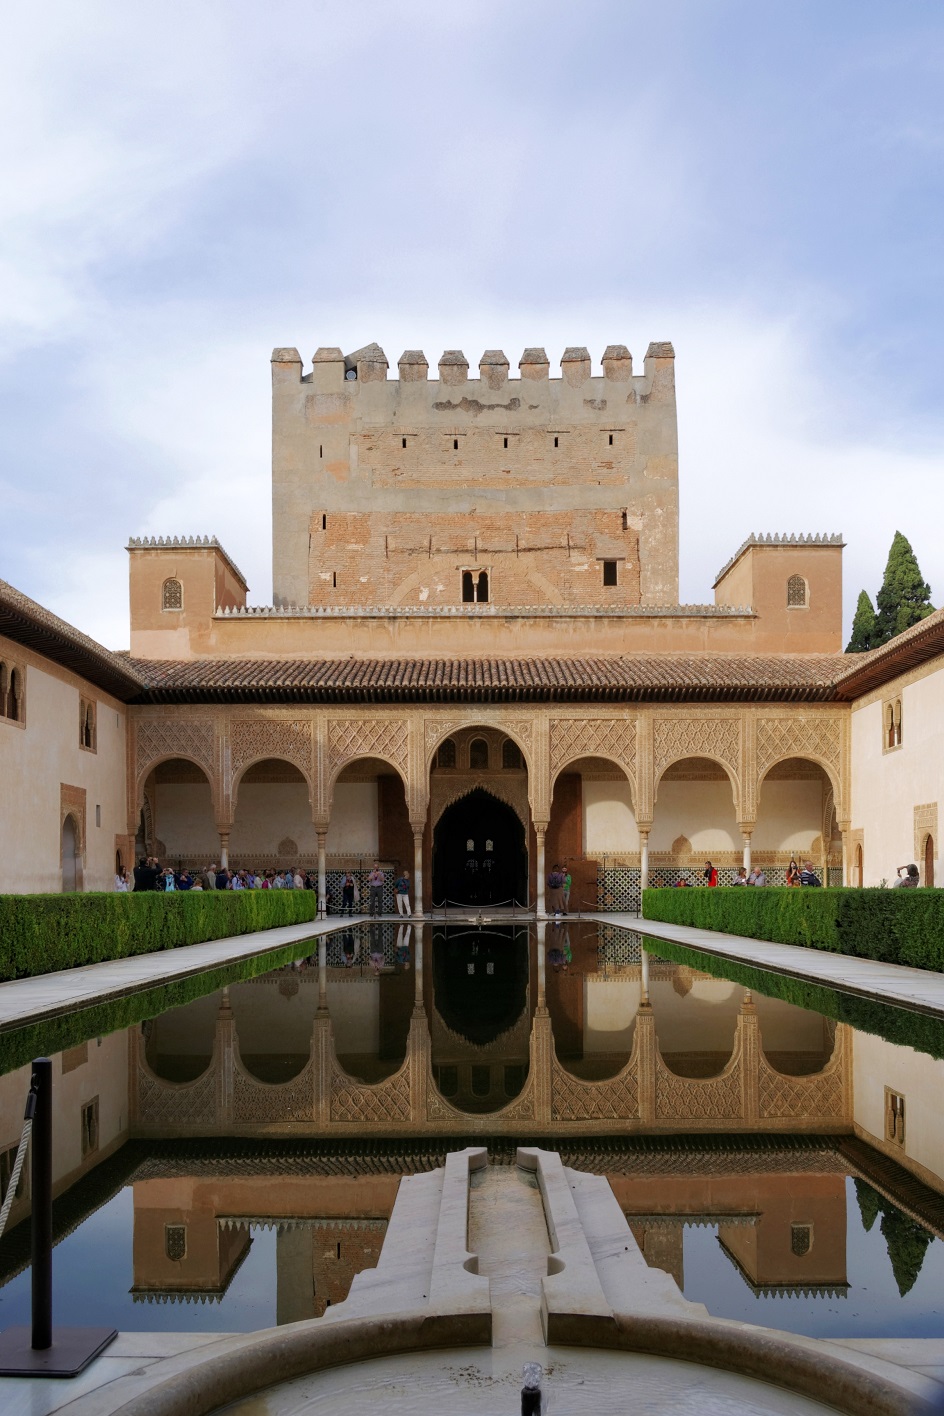 Архитектура. Дворцовый комплекс Альгамбра в Севилье в мавританском стиле, XIV век